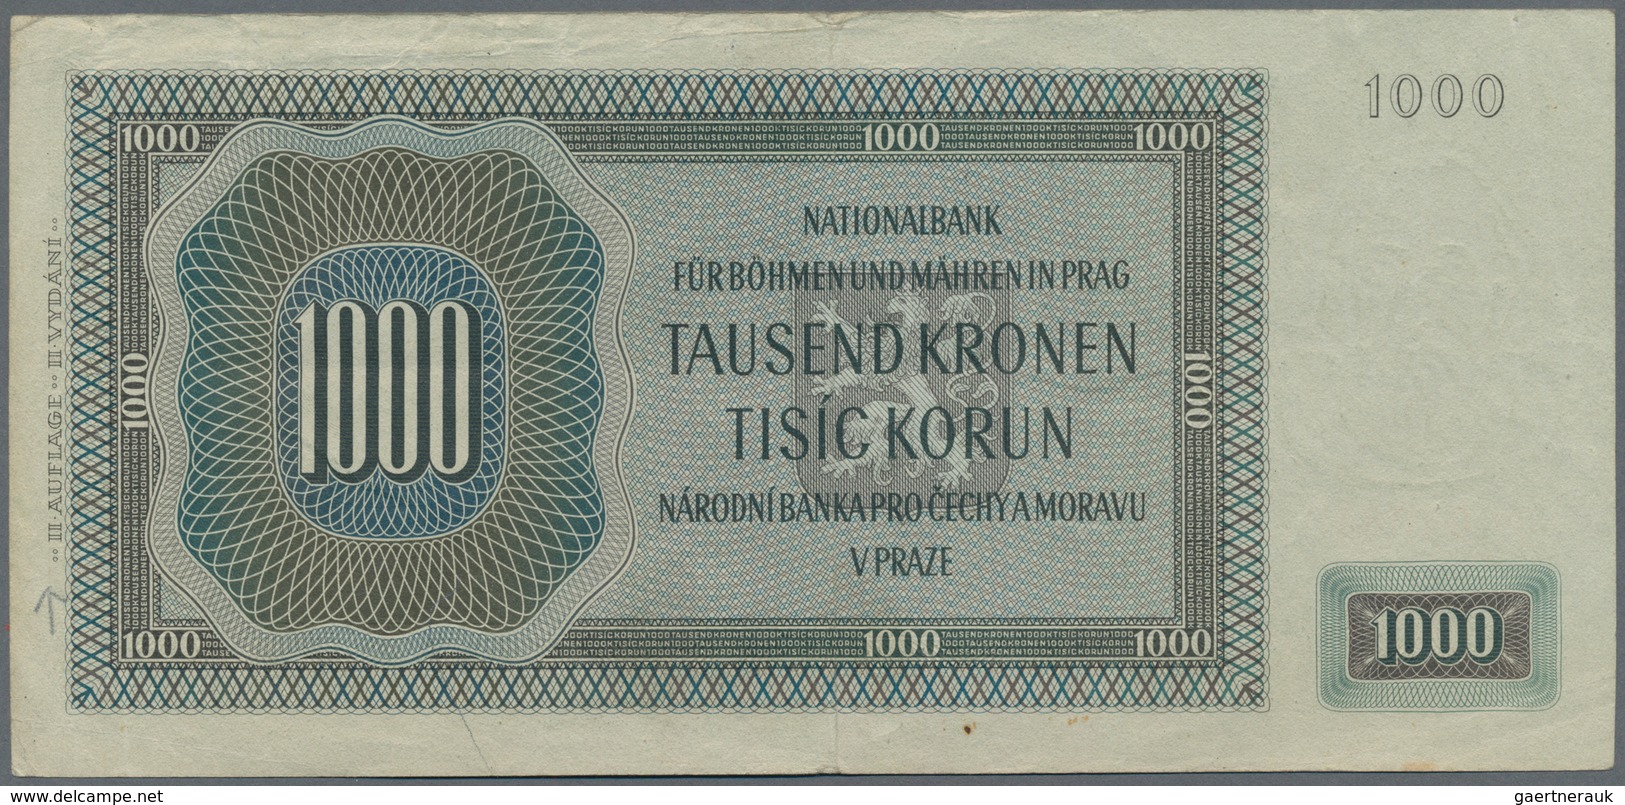 Deutschland - Nebengebiete Deutsches Reich: Protektorat Böhmen und Mähren, lot mit 14 Banknoten, dab